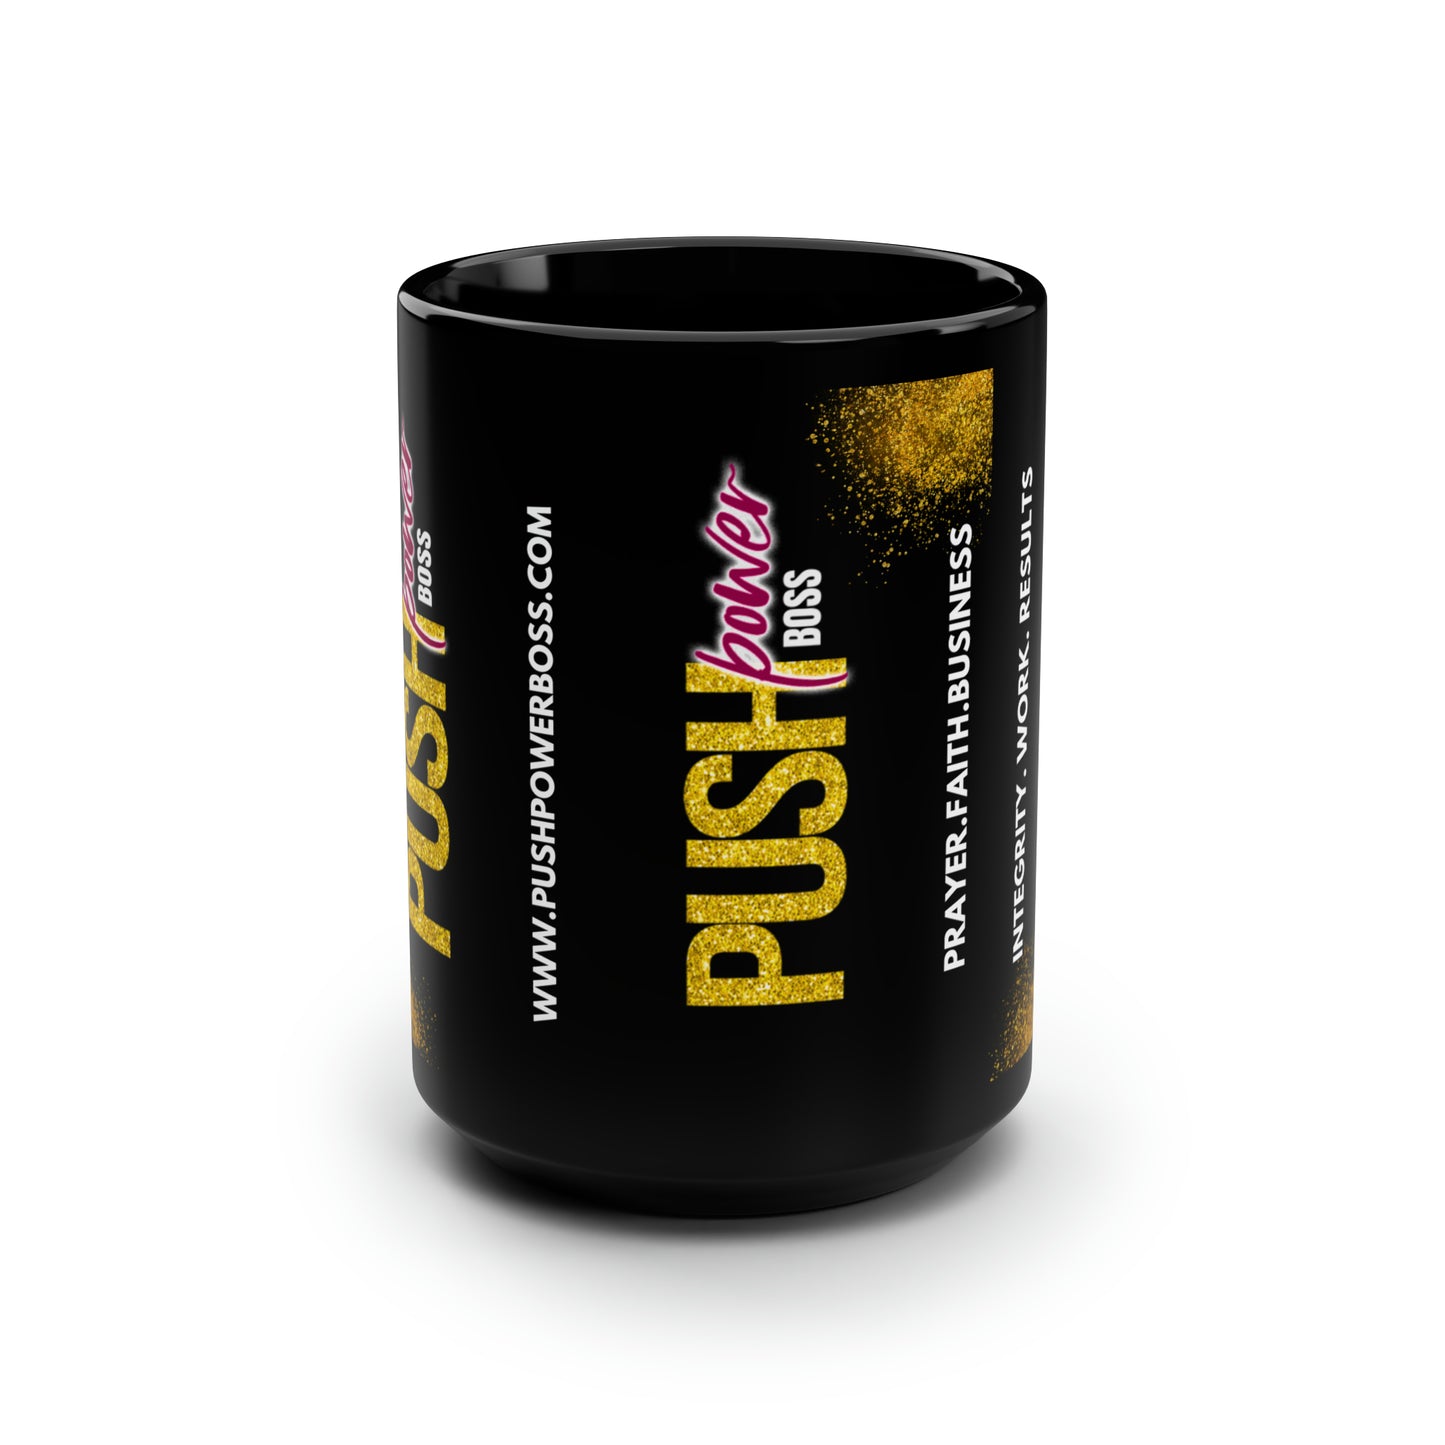 Push Power Boss Black Coffee/Tea Mug, 15oz